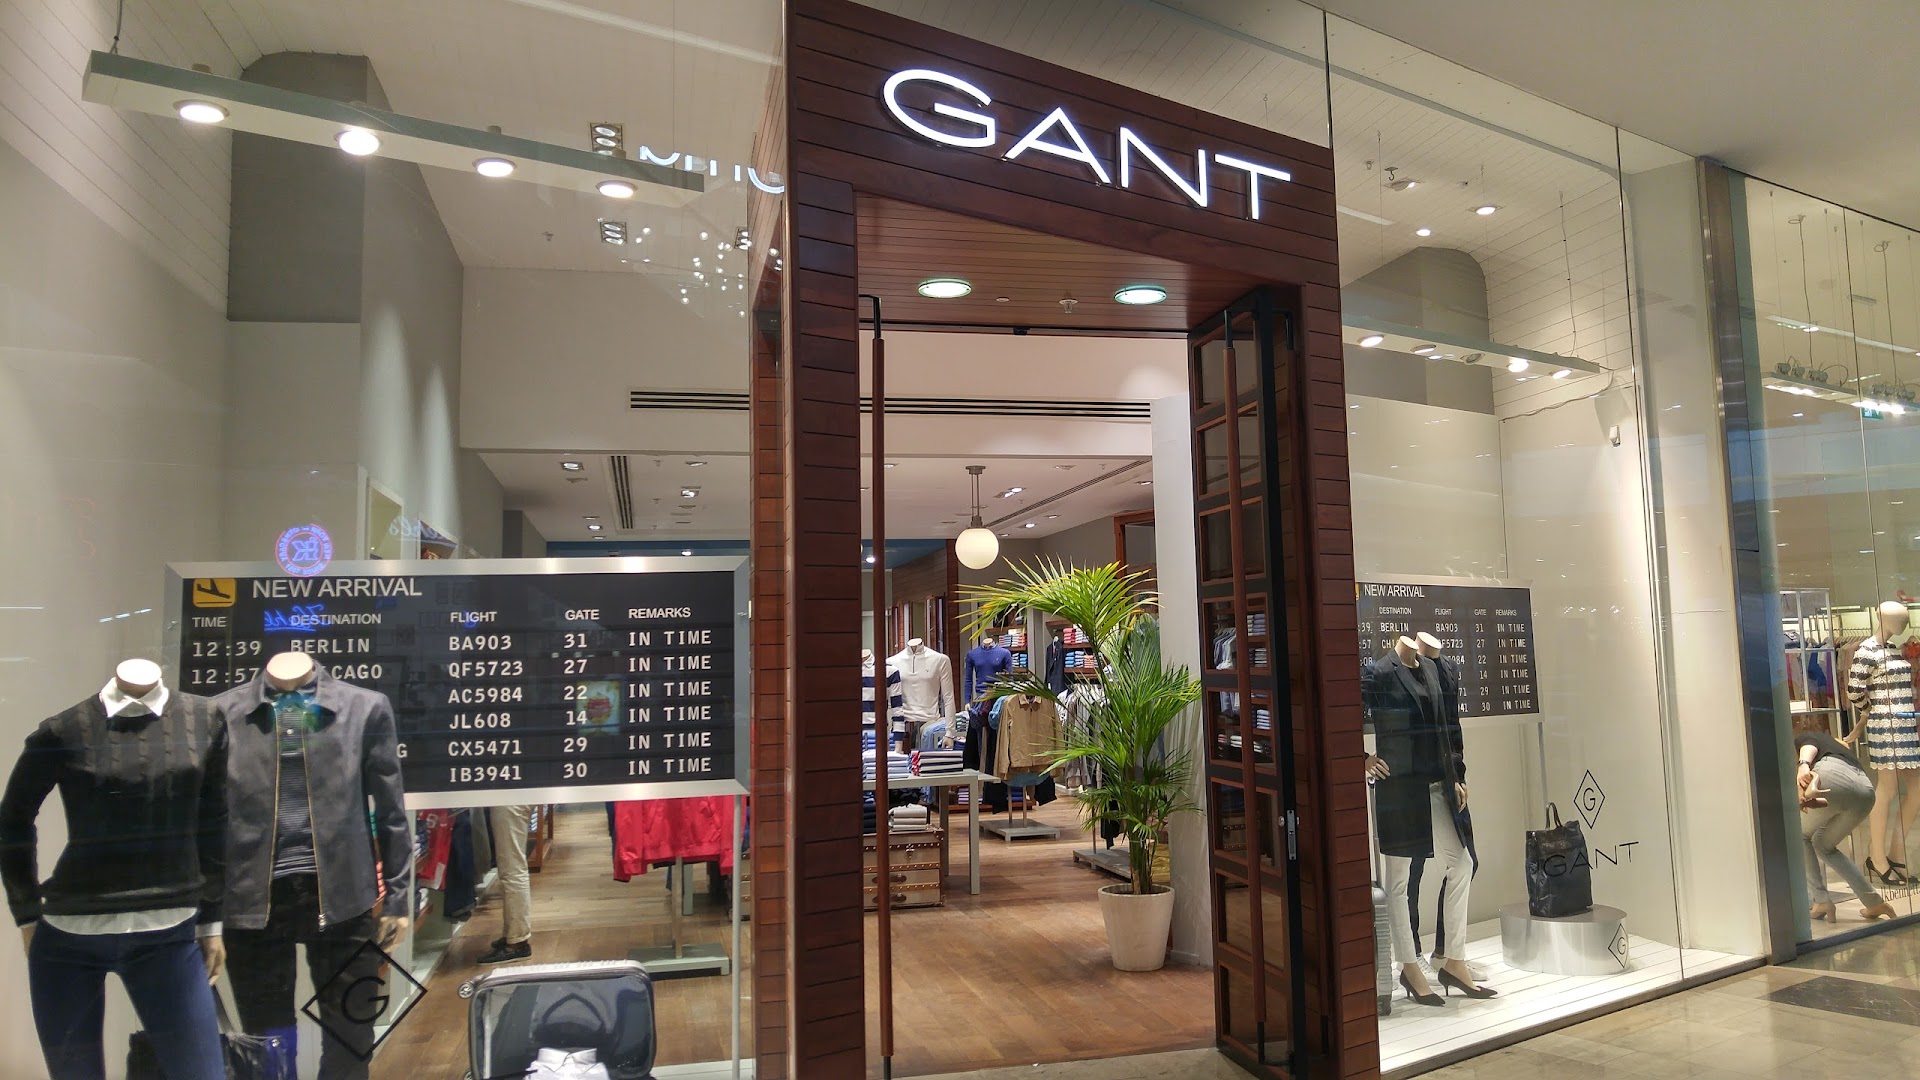 GANT Store London - G5G5 Network